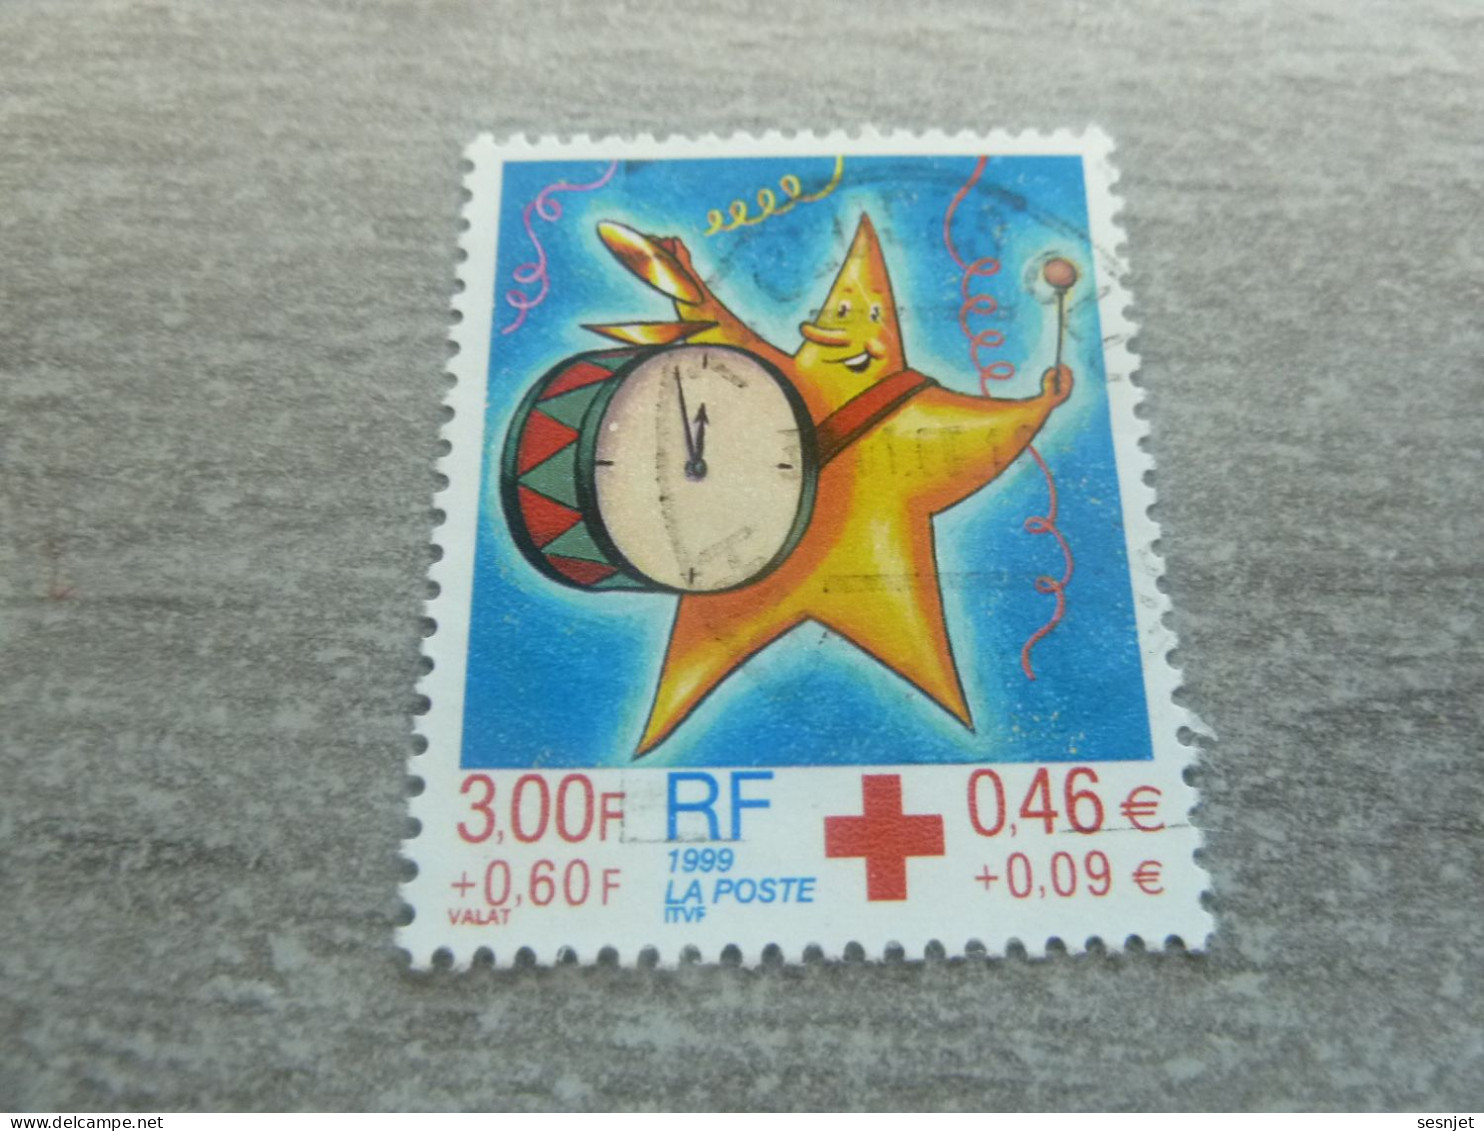 Croix-Rouge - Fêtes De Fin D'Année - 3f.+0.60c. (0.46+0.09 €) - Yt 3288 - Multicolore - Oblitéré - Année 1999 - - Rode Kruis